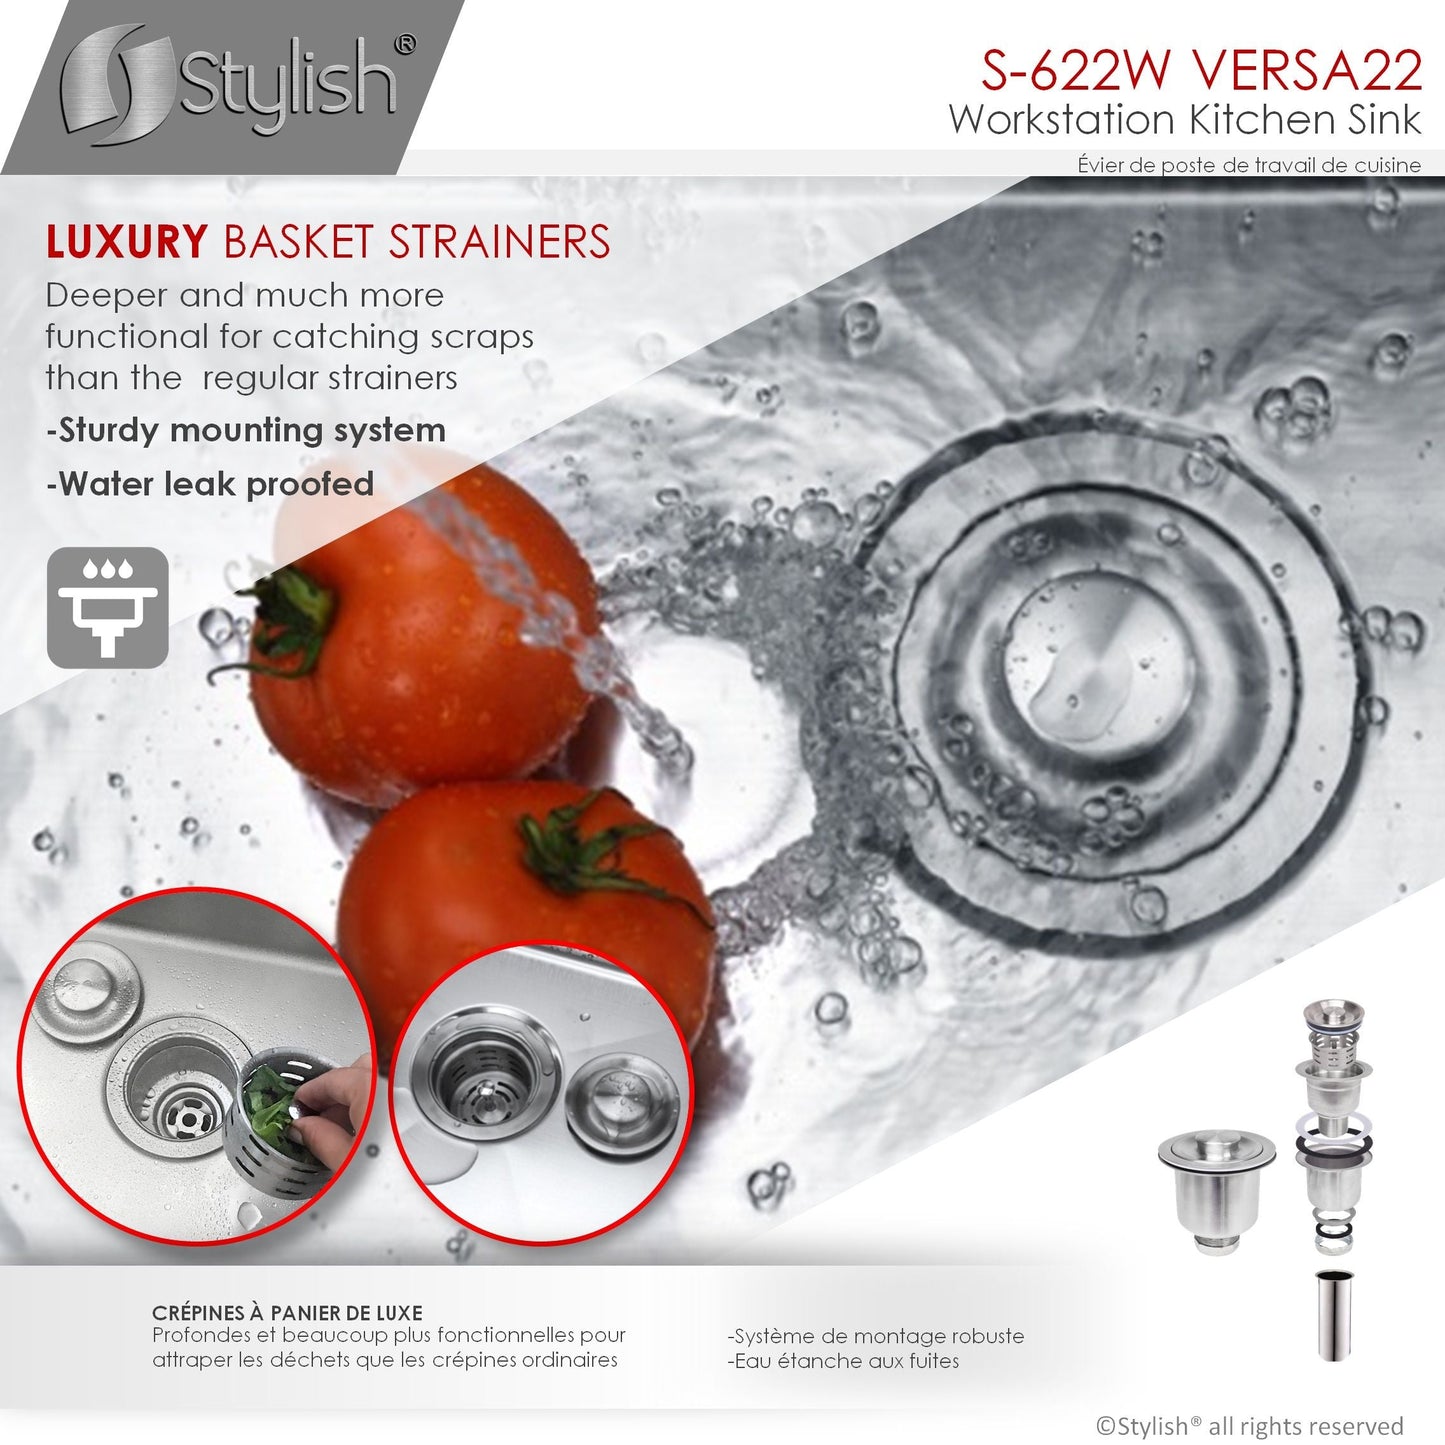 Stylish Versa22 22" x 19" Workstation Single Bowl Undermount 16 Gauge Stainless Steel Kitchen Sink with Built in Accessories S-622W